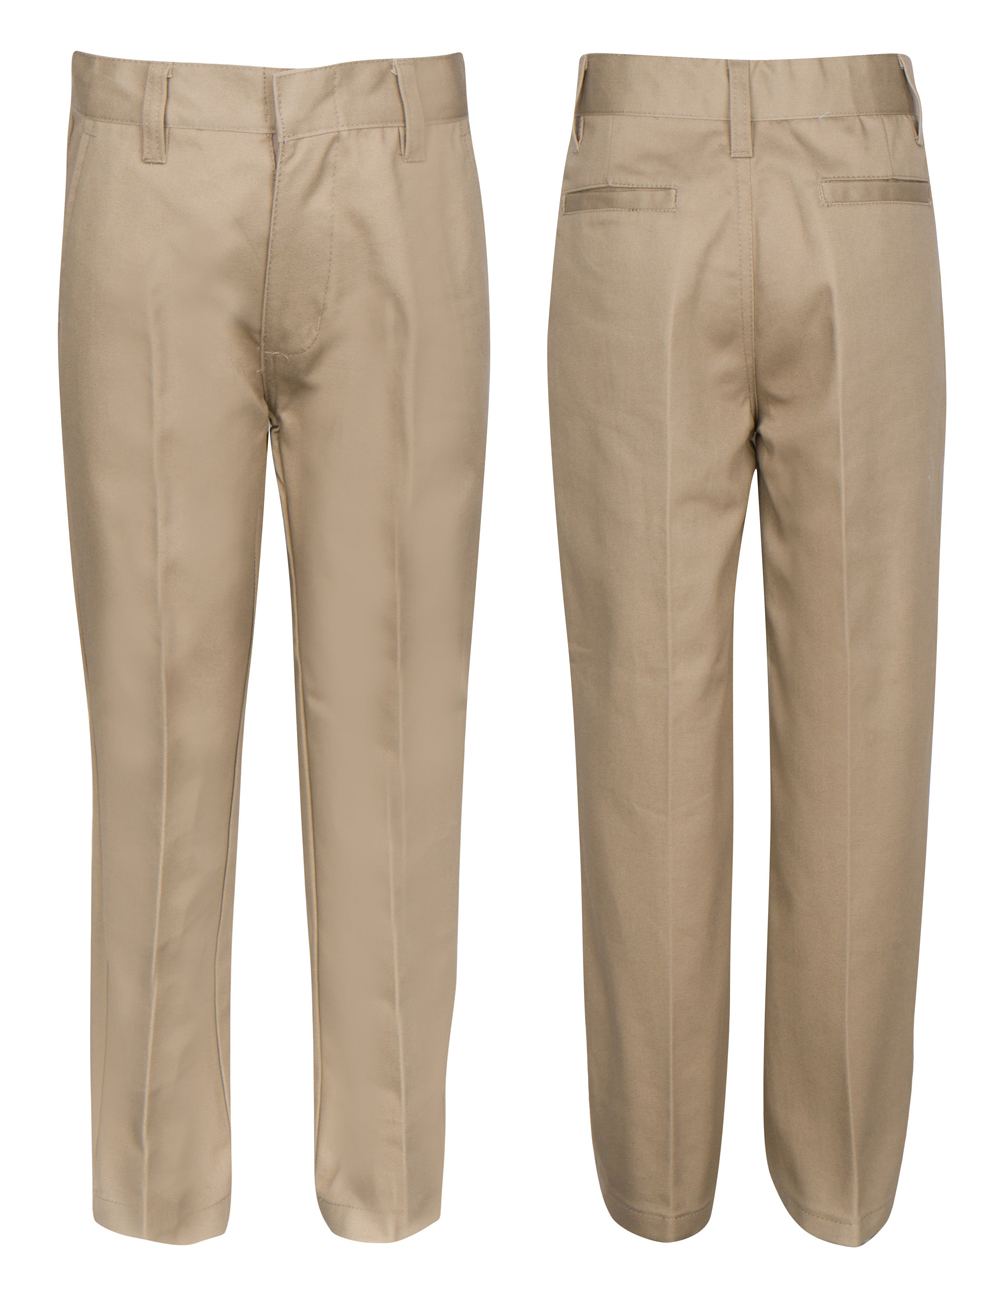 Boy's School UNIFORM Trouser Pants - Khaki - Choose Your Sizes (8-20)